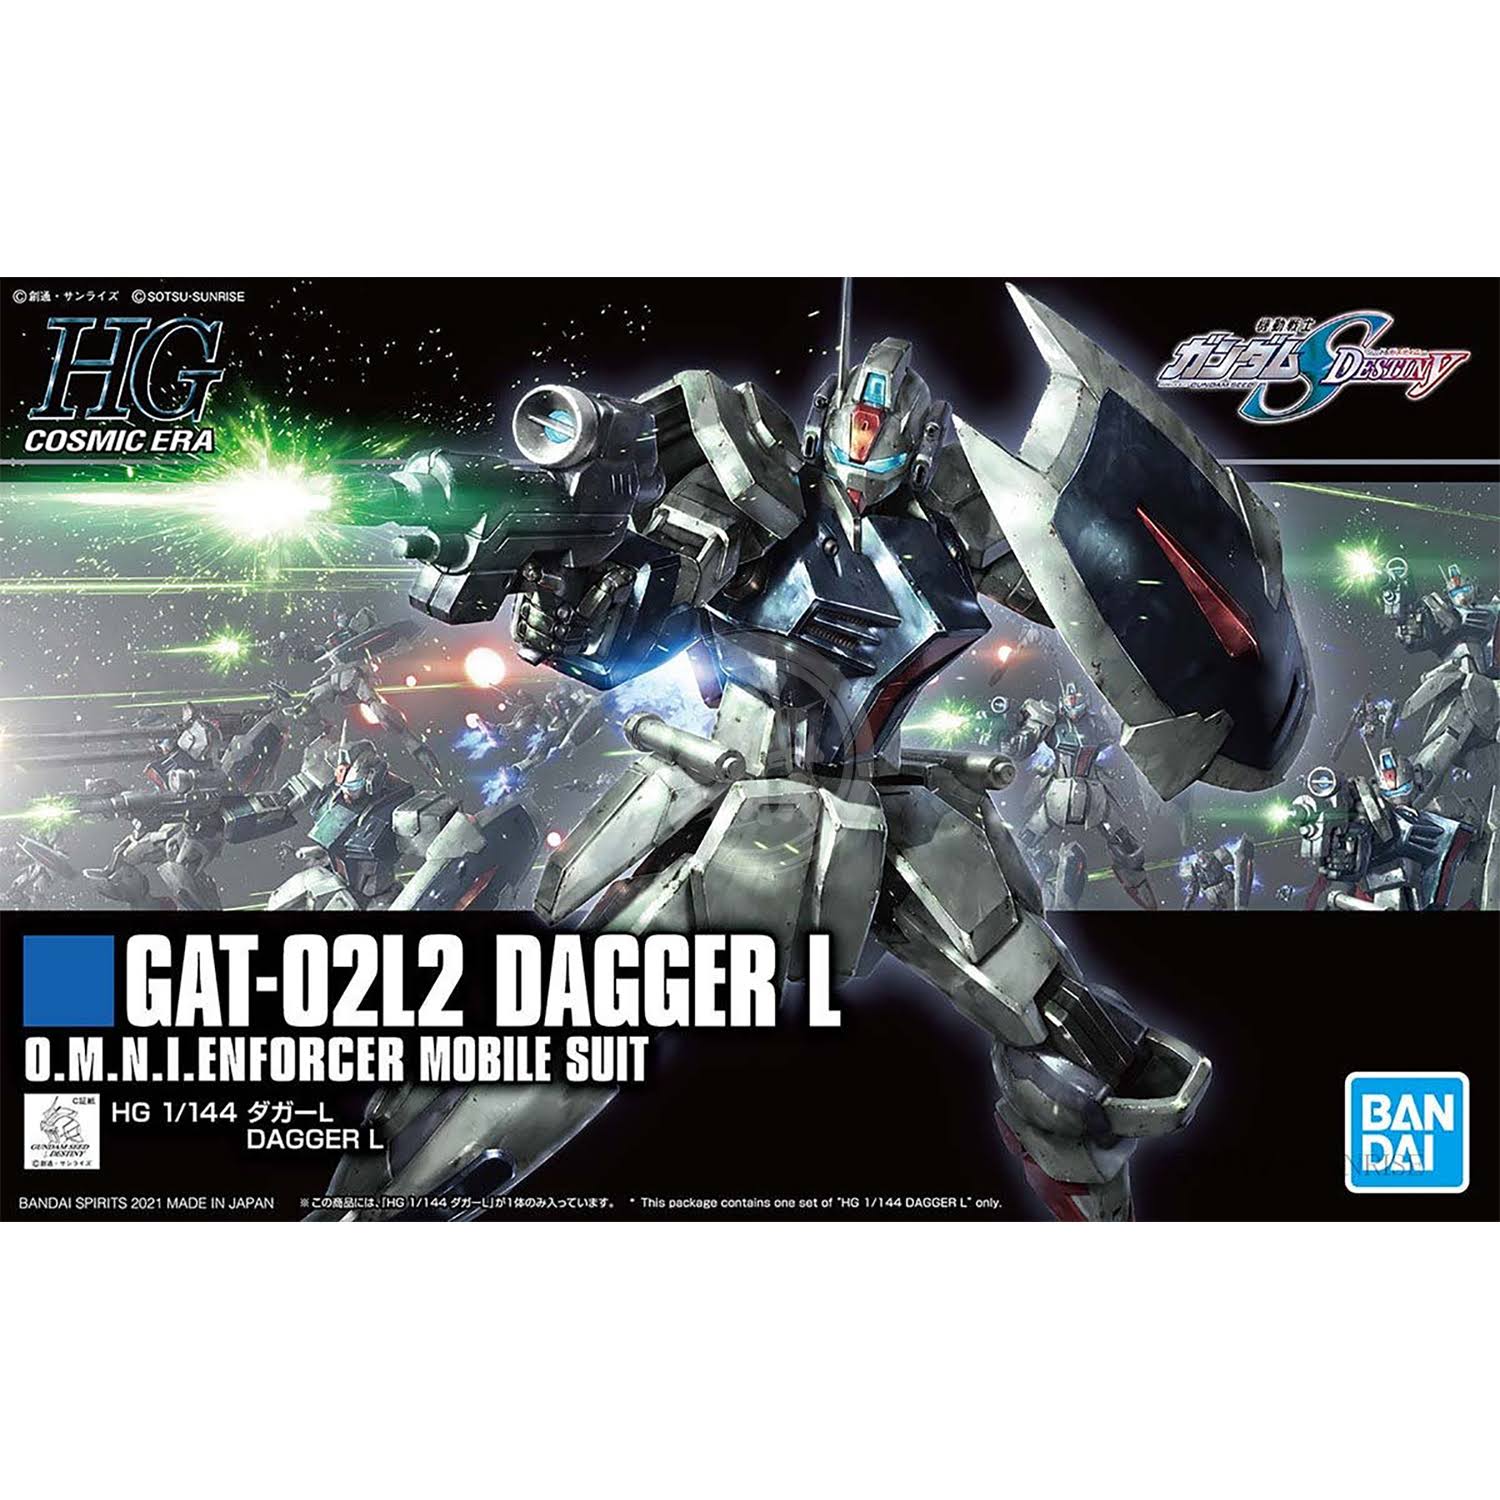 Bandai Gundam HGCE 1/144 Dagger L